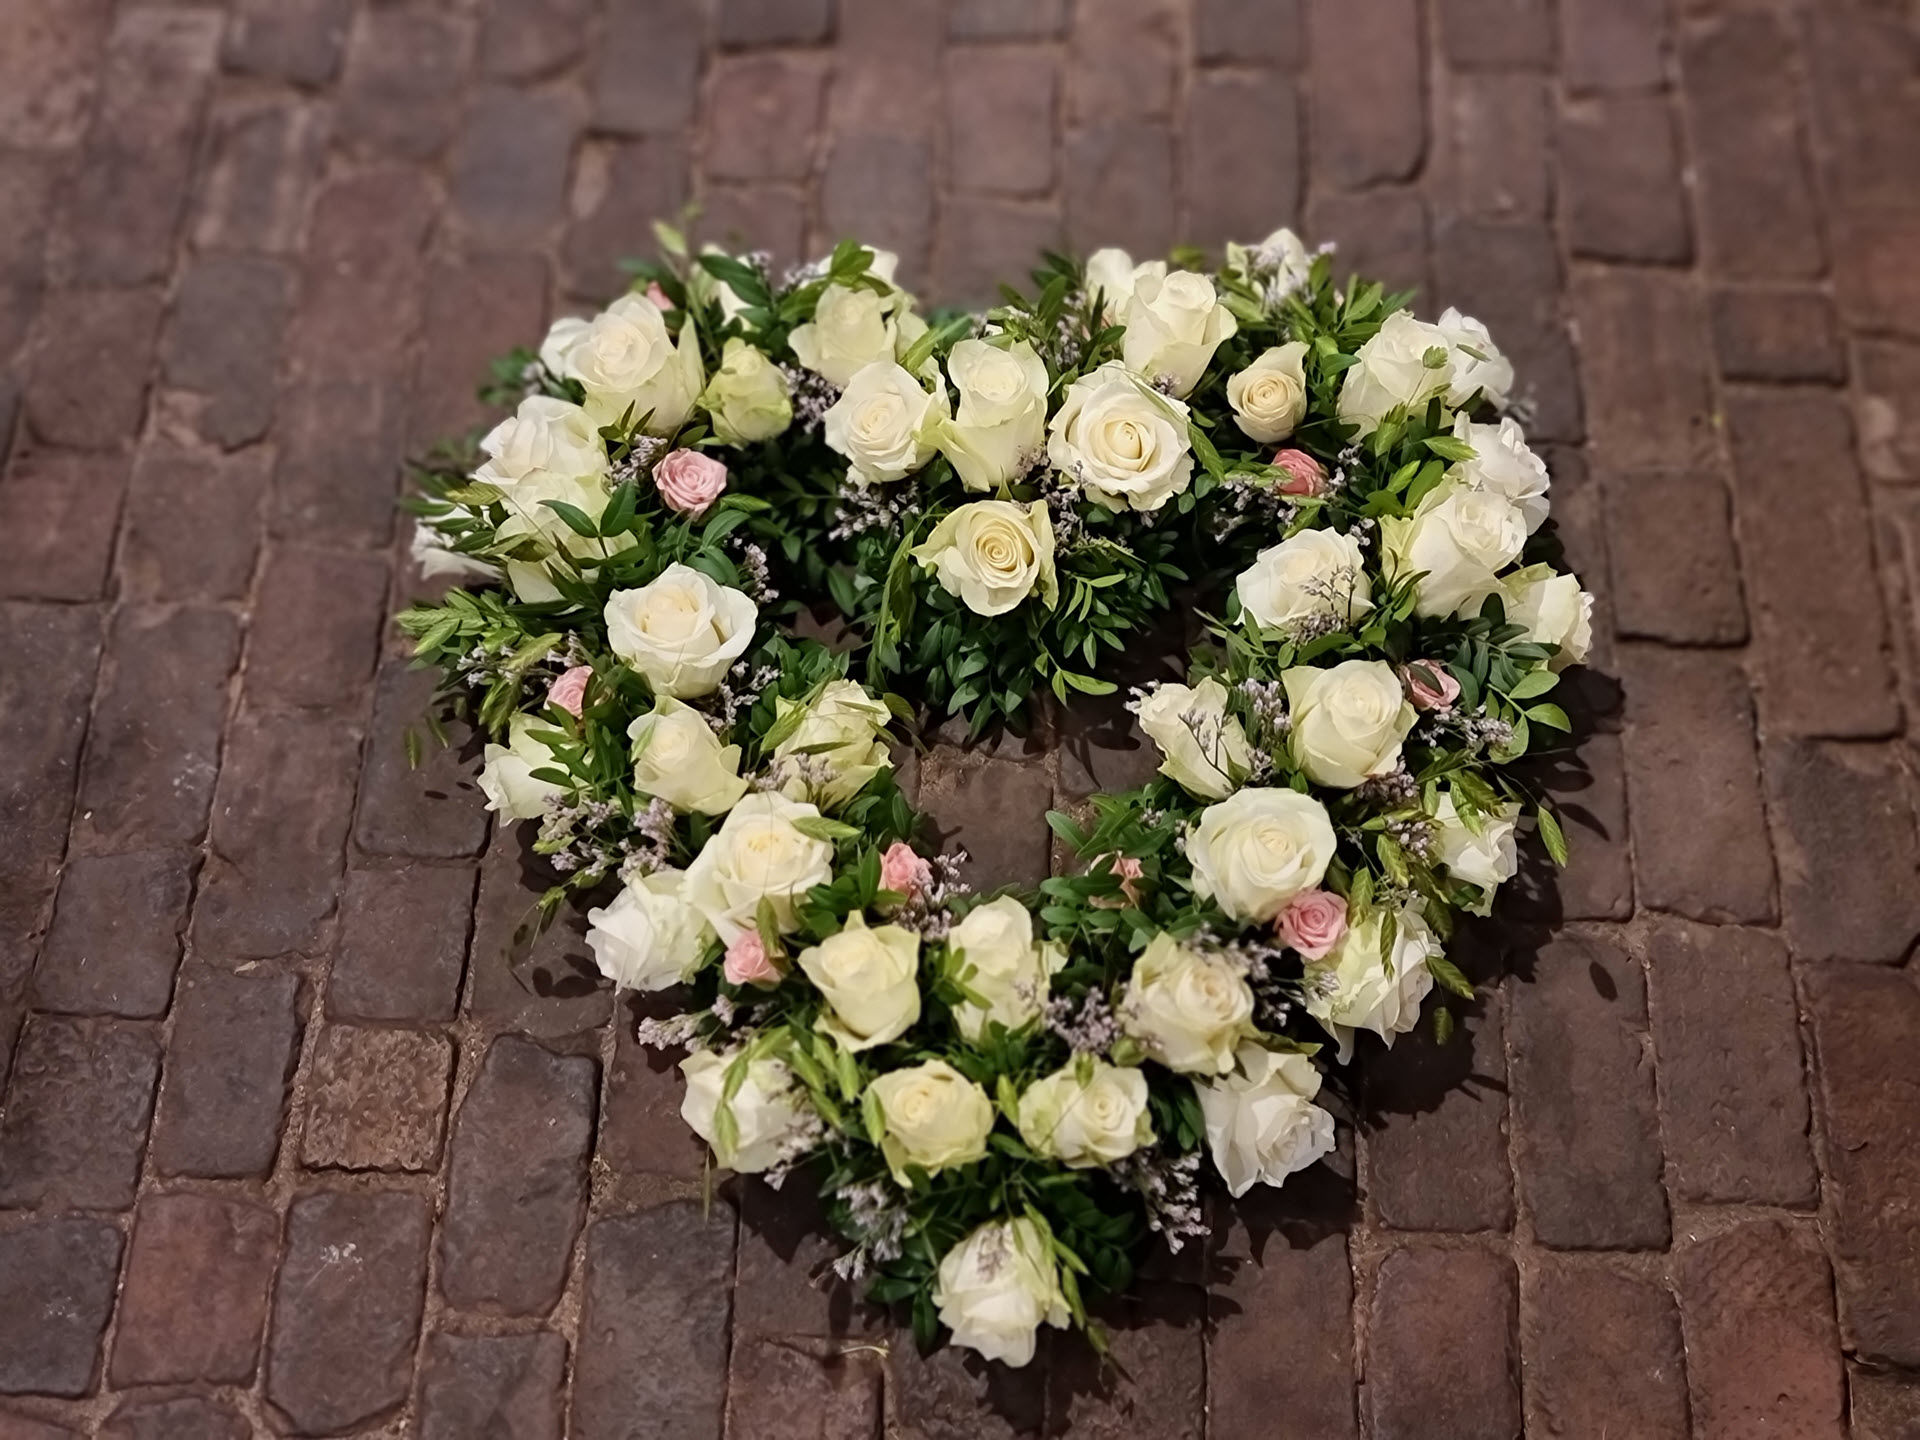 Bloemsierkunst Groeneveld bloemen uitvaart hartvorm open met witte rozen